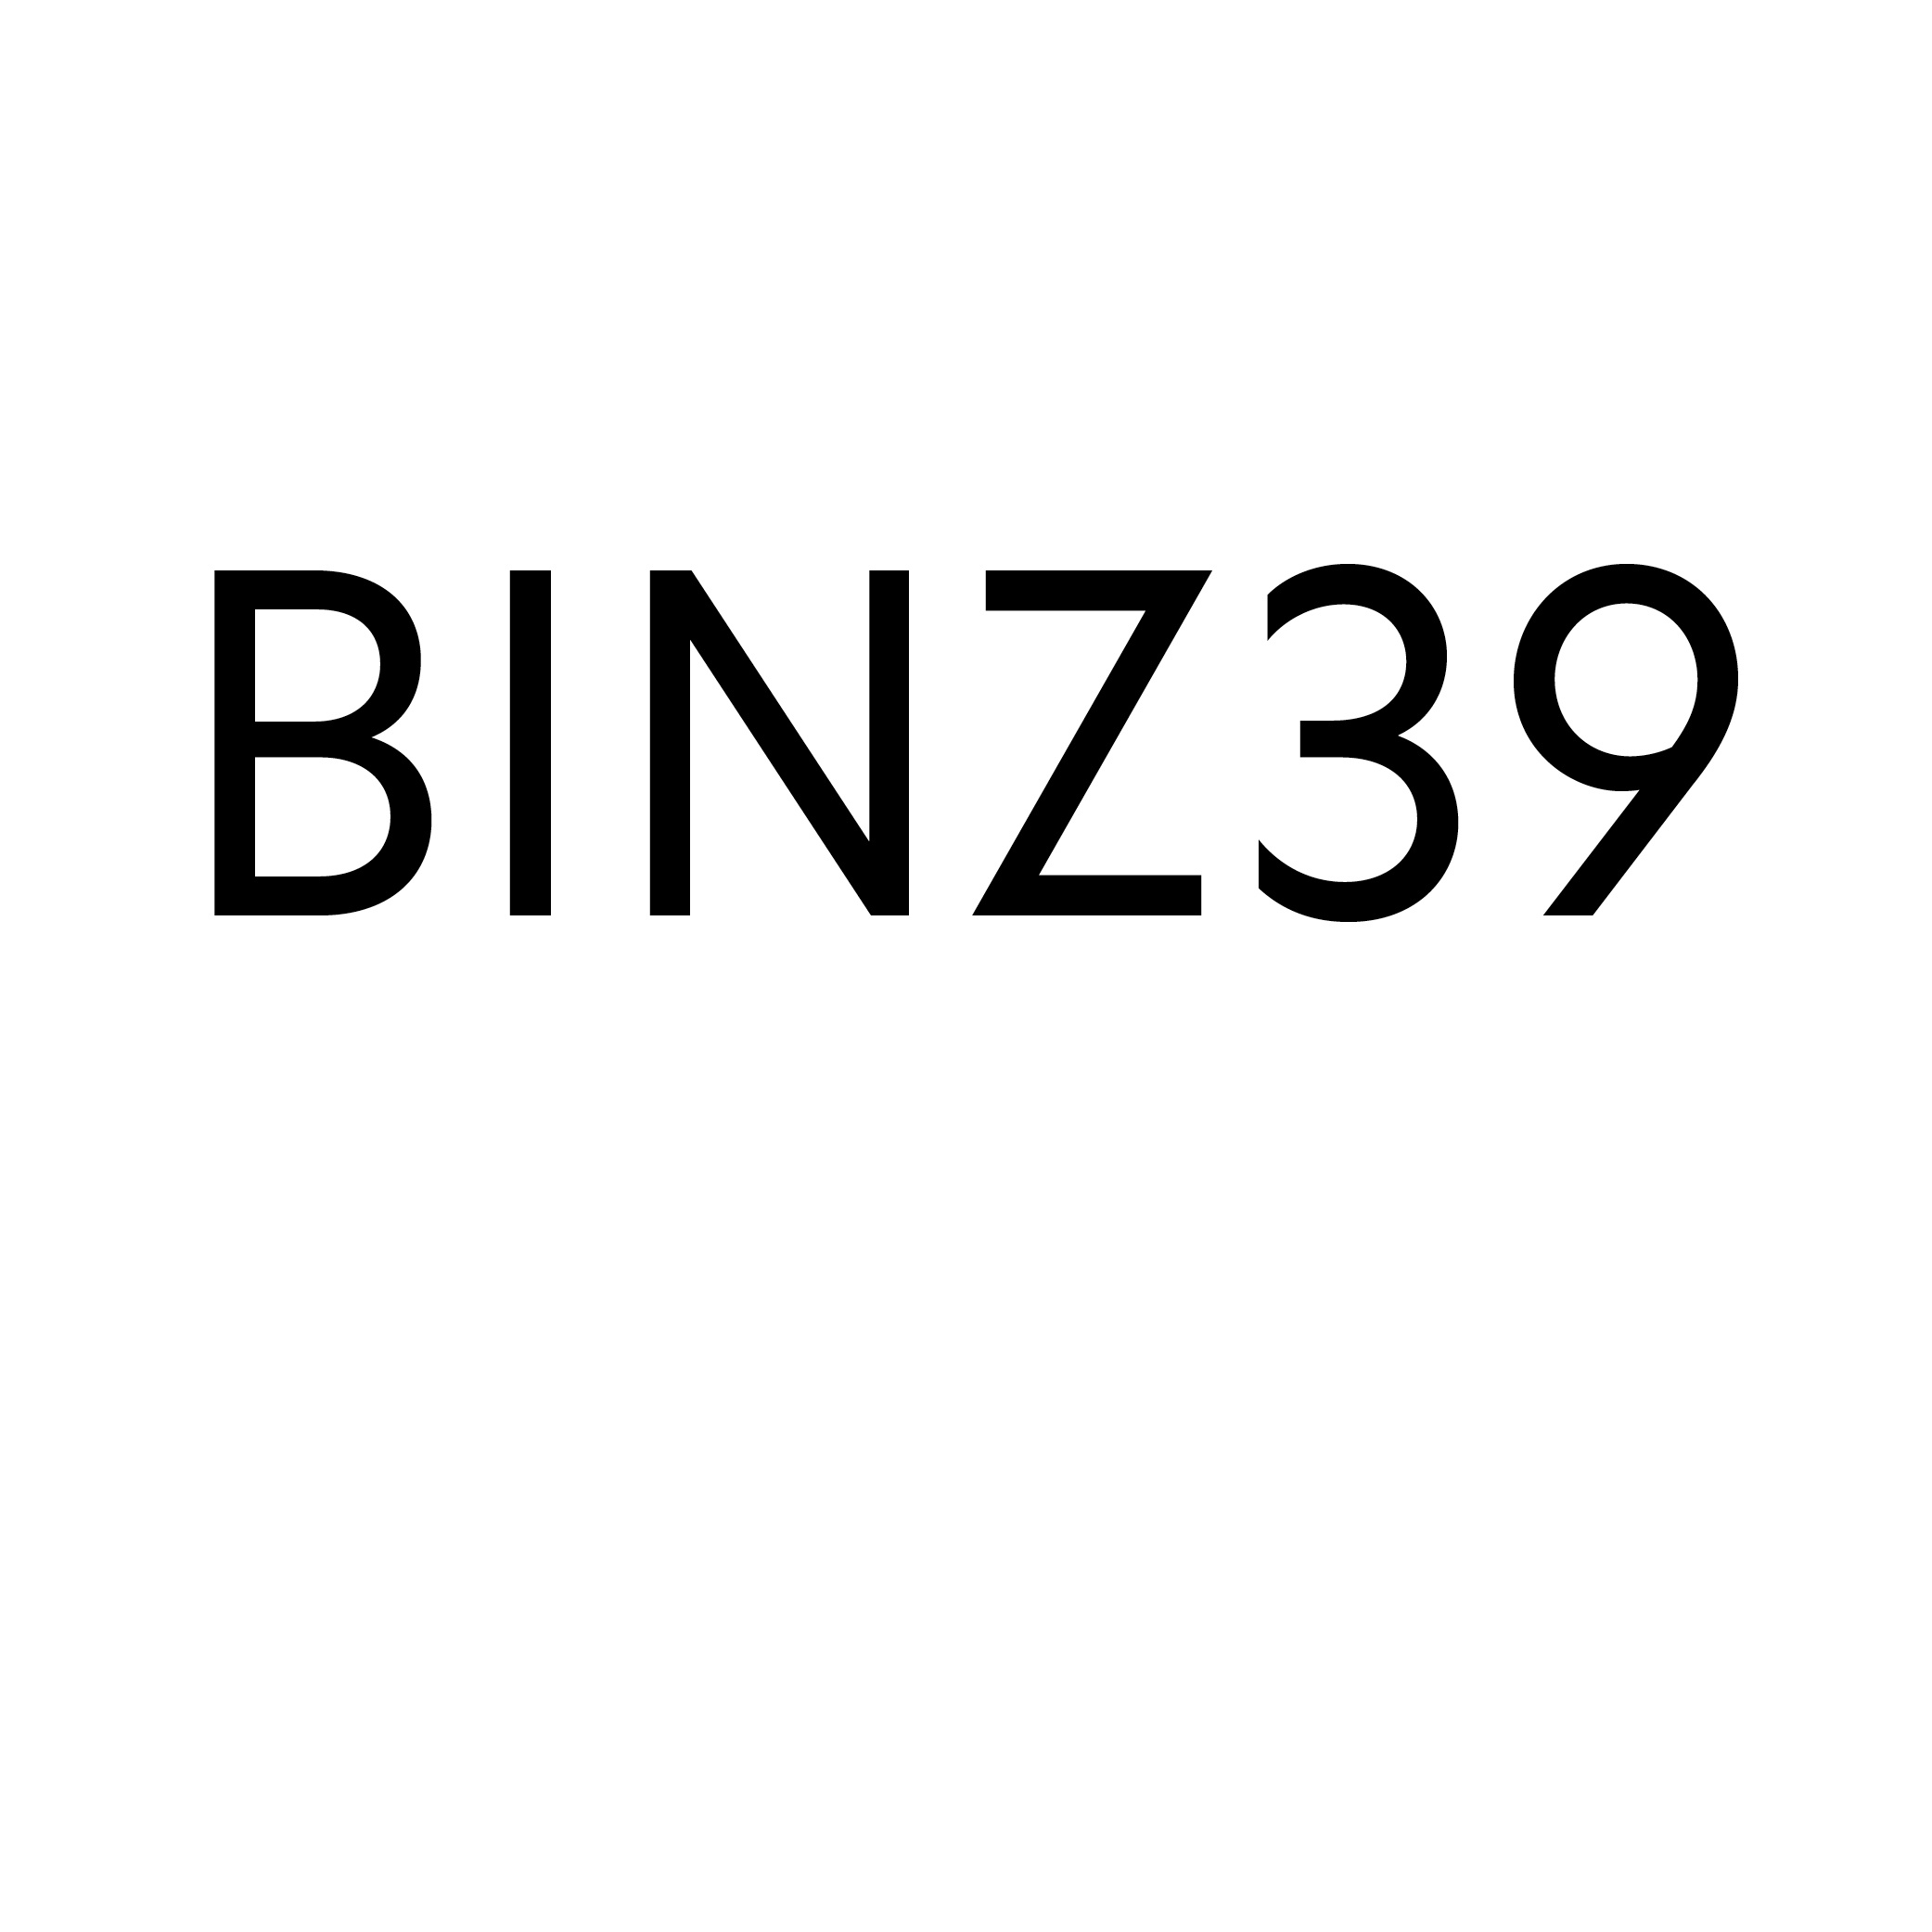 (c) Binz39.ch